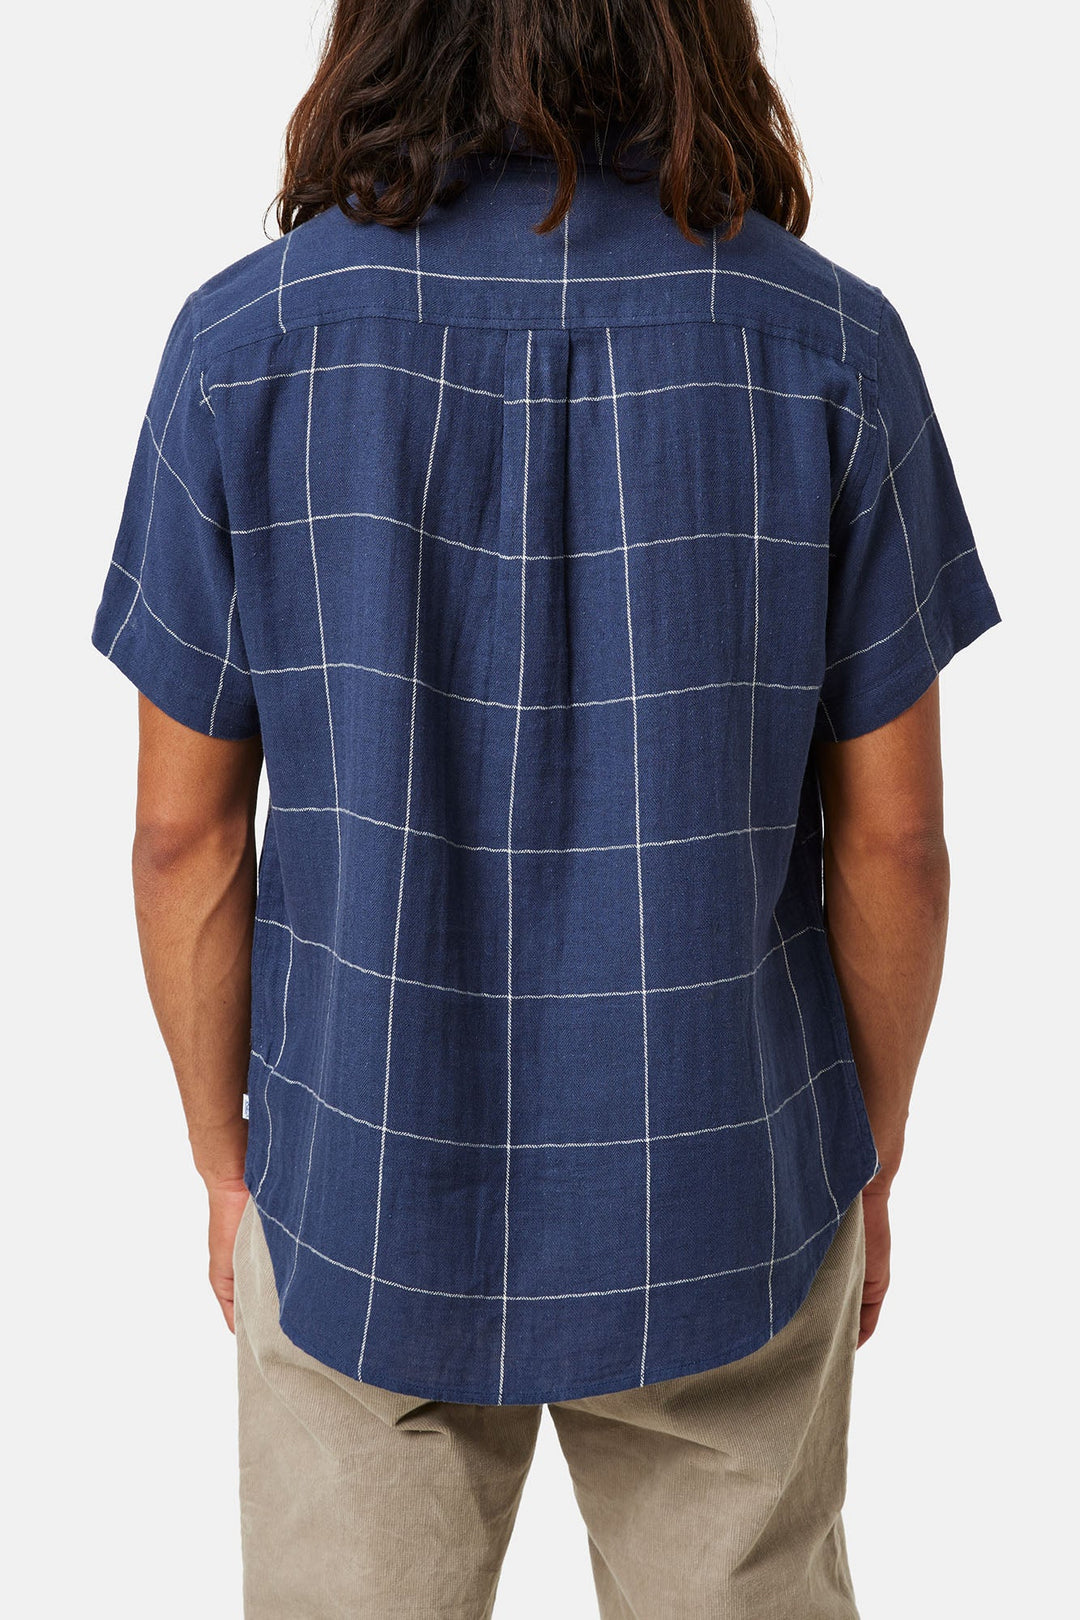 Katin Monty Shirt - Navy (Back)